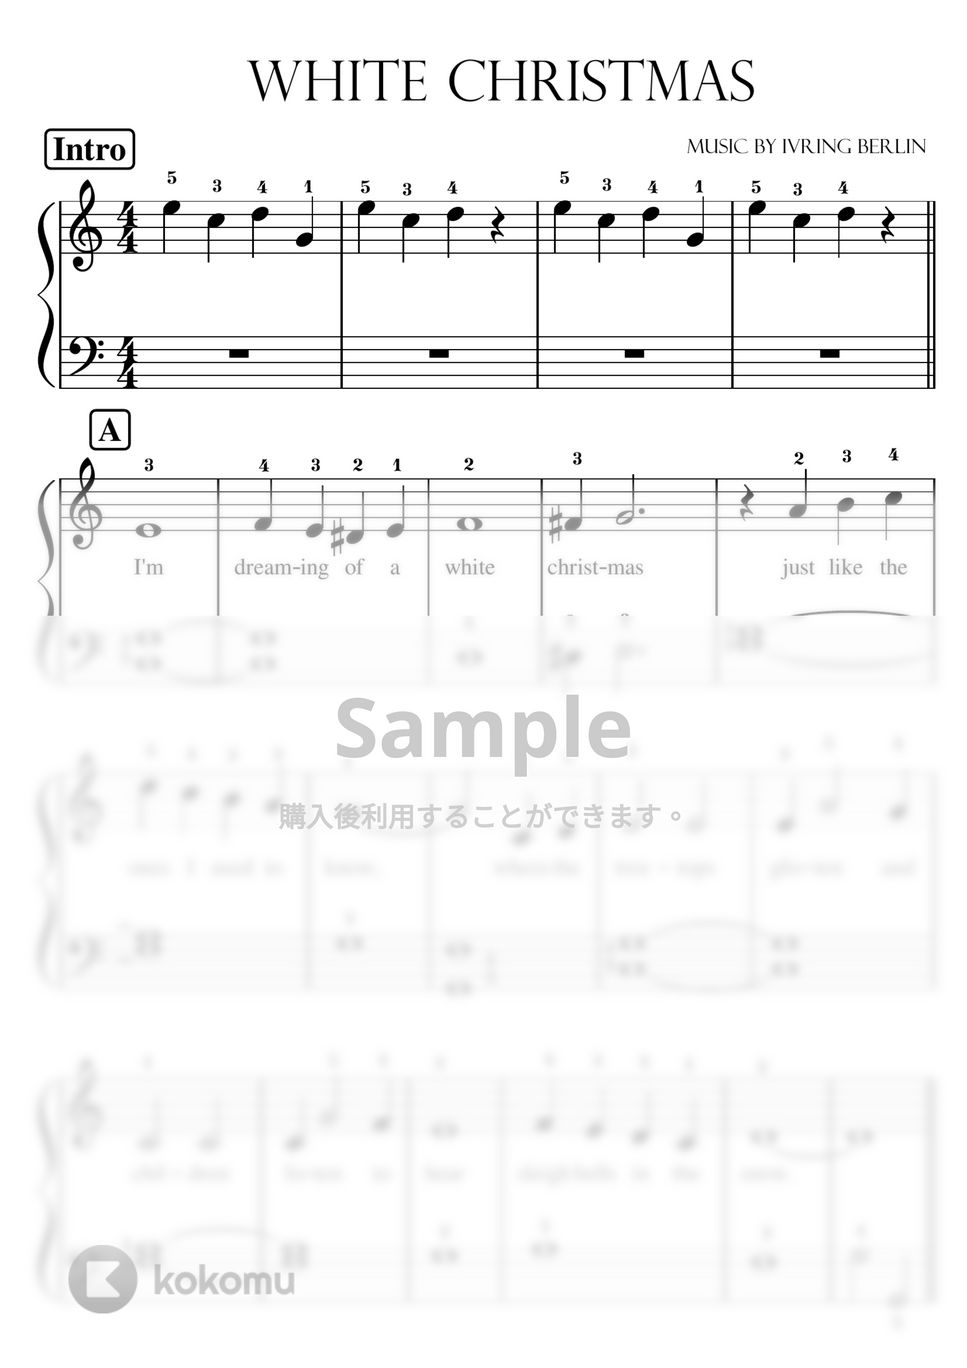 アーヴィング・バーリン - 【初級】ホワイト・クリスマス (White Chrsimas) by ピアノのせんせいの楽譜集